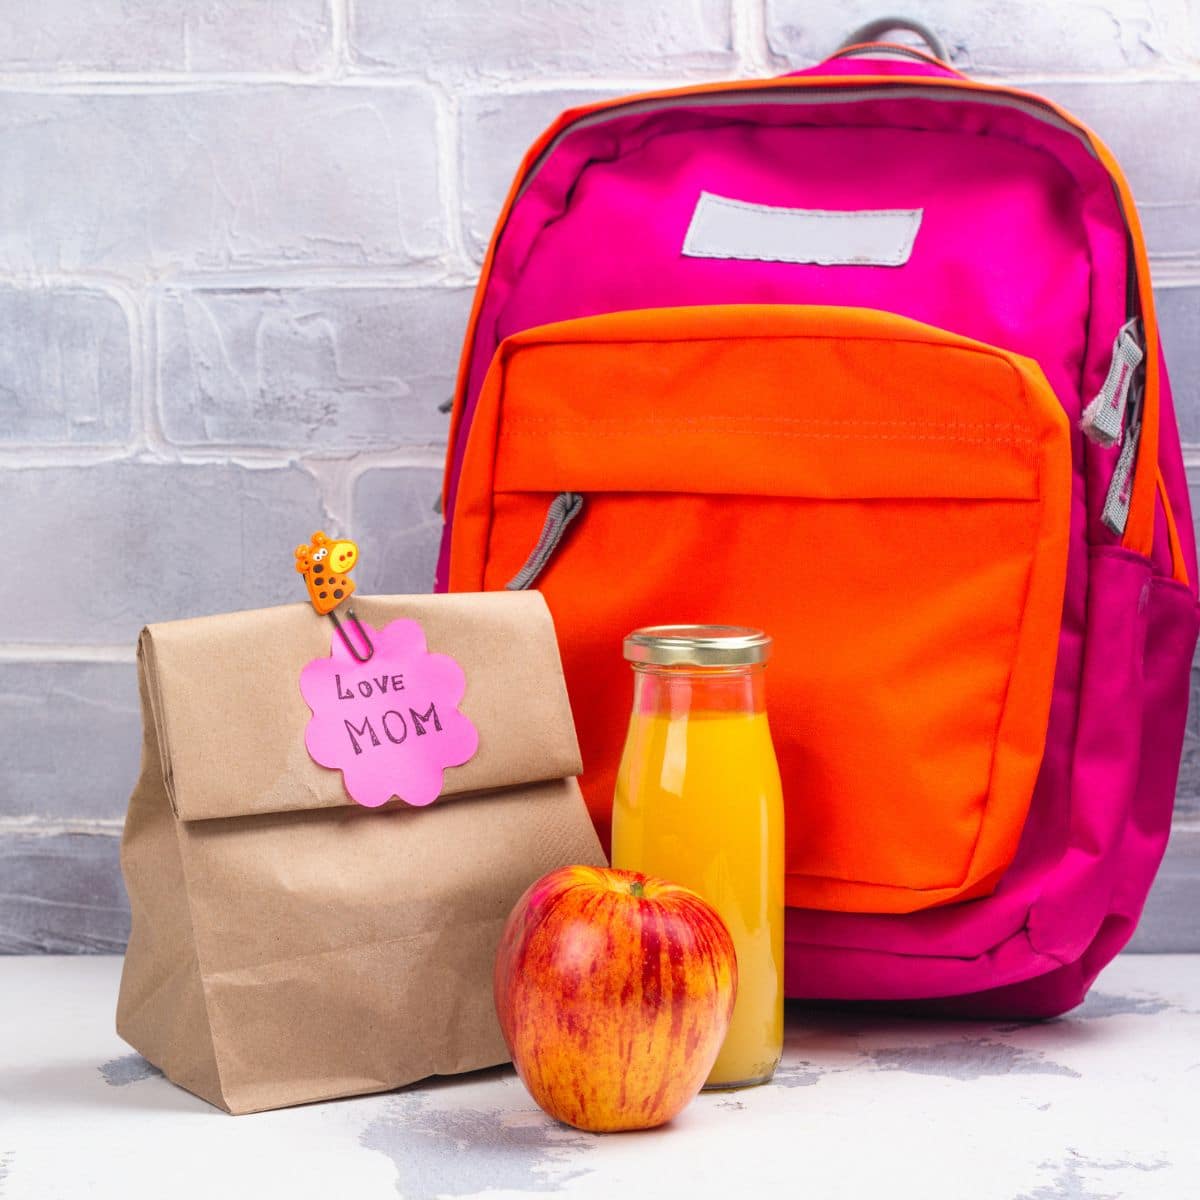 Image carrée du sac à dos et du sac à lunch pour enfants.